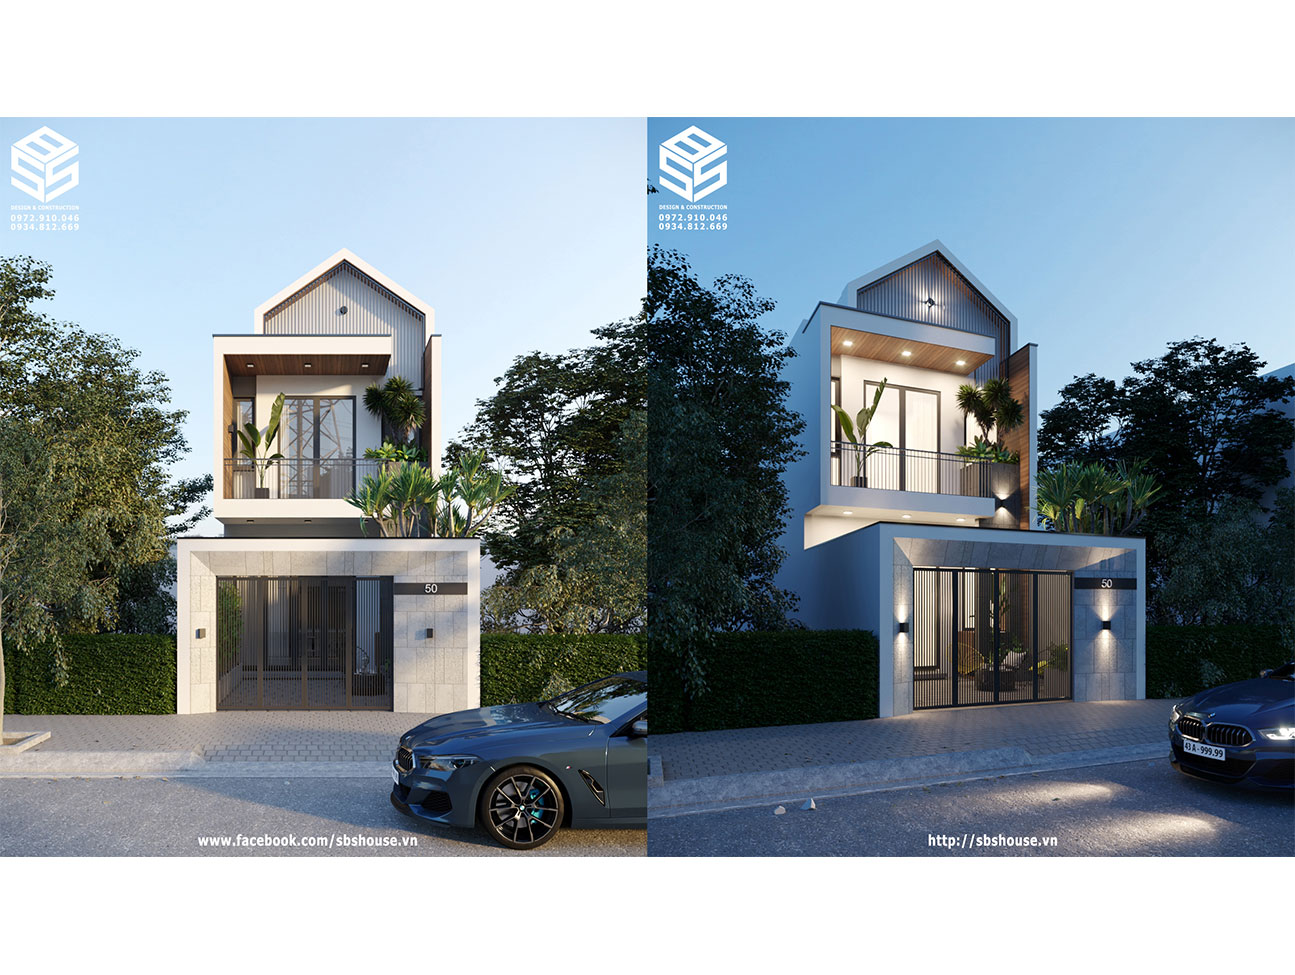 Nhà phố phong cách thiết kế Scandinavian - SBSHouse Thiết kế nhà đẹp